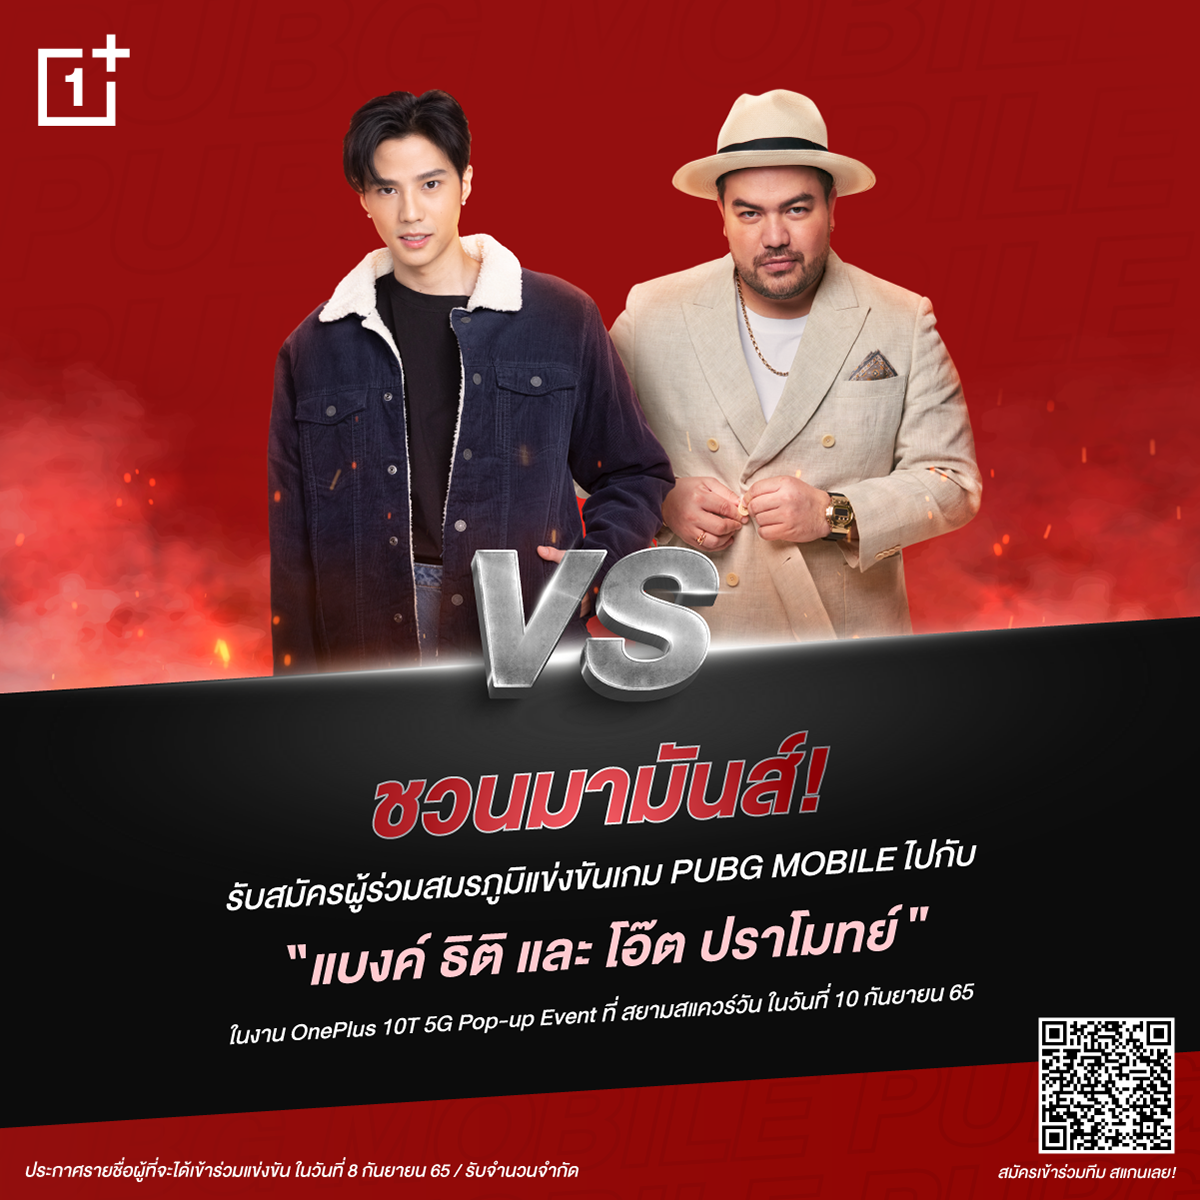 วันพลัส ประเทศไทย เชิญร่วมสัมผัสประสบการณ์ใหม่ "OnePlus 10T 5G " ในงาน "OnePlus 10T 5G Pop-up Event"